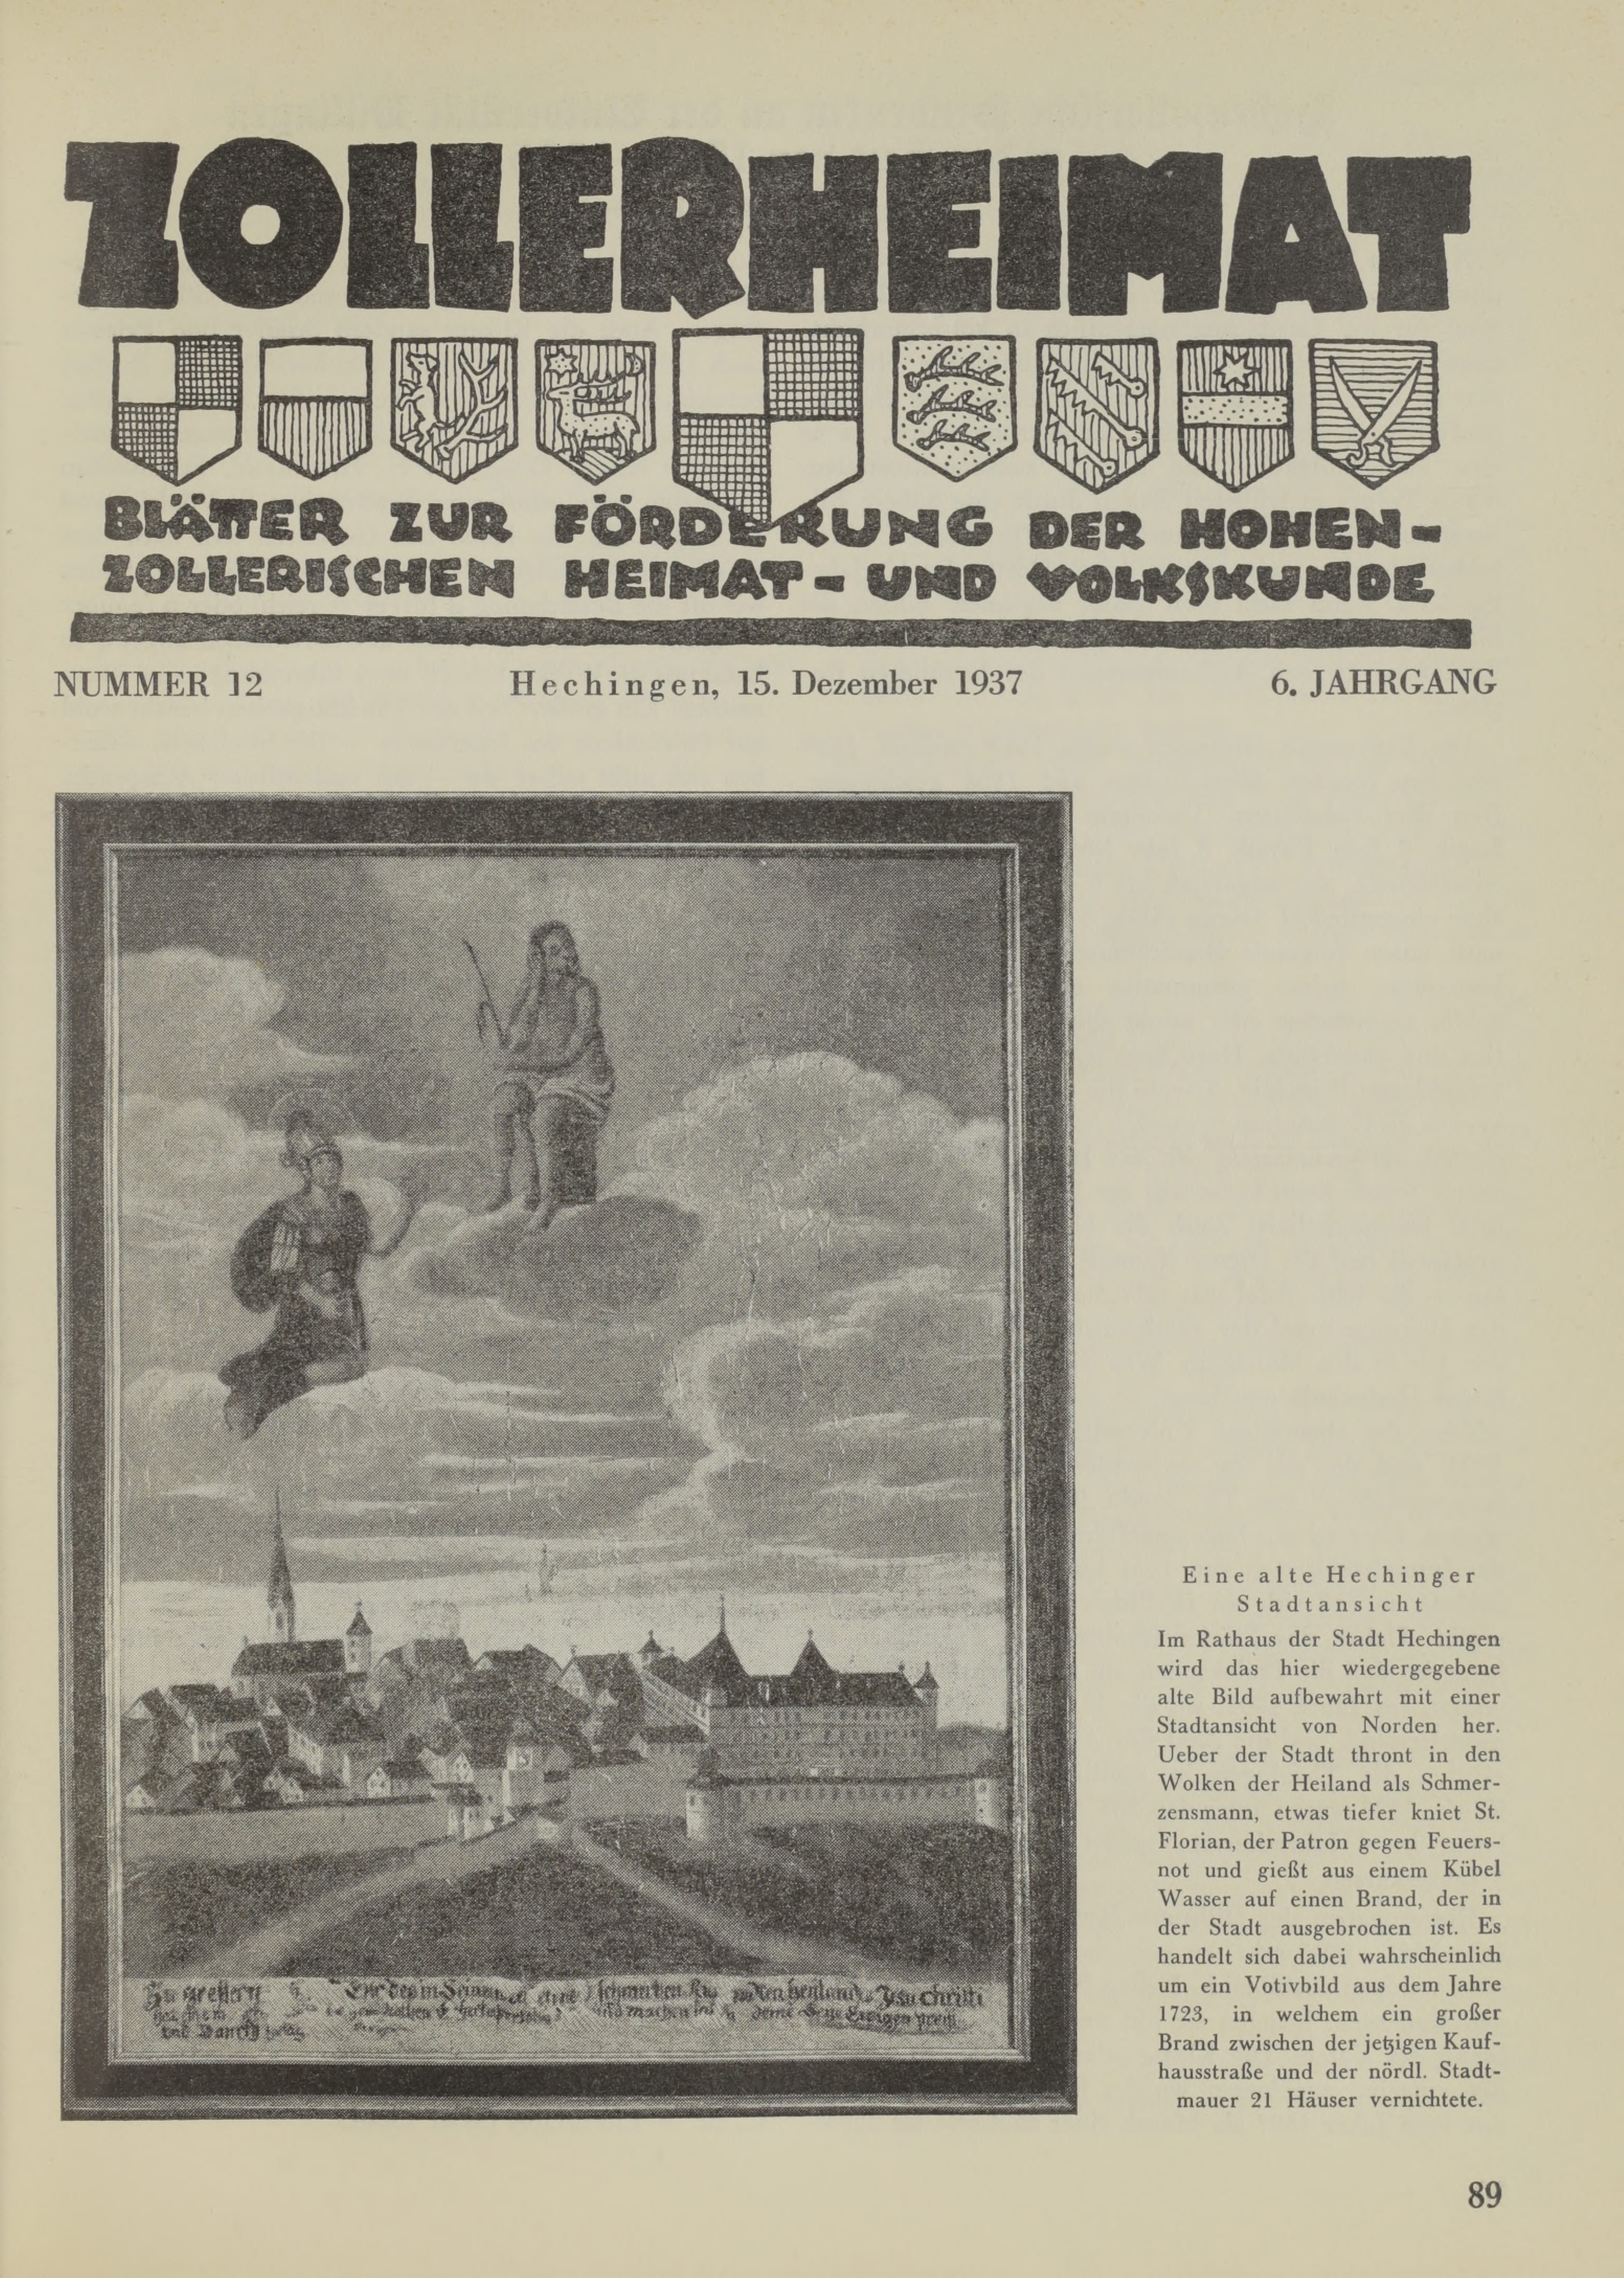                     Ansehen Bd. 6 Nr. 12 (1937): Zollerheimat
                